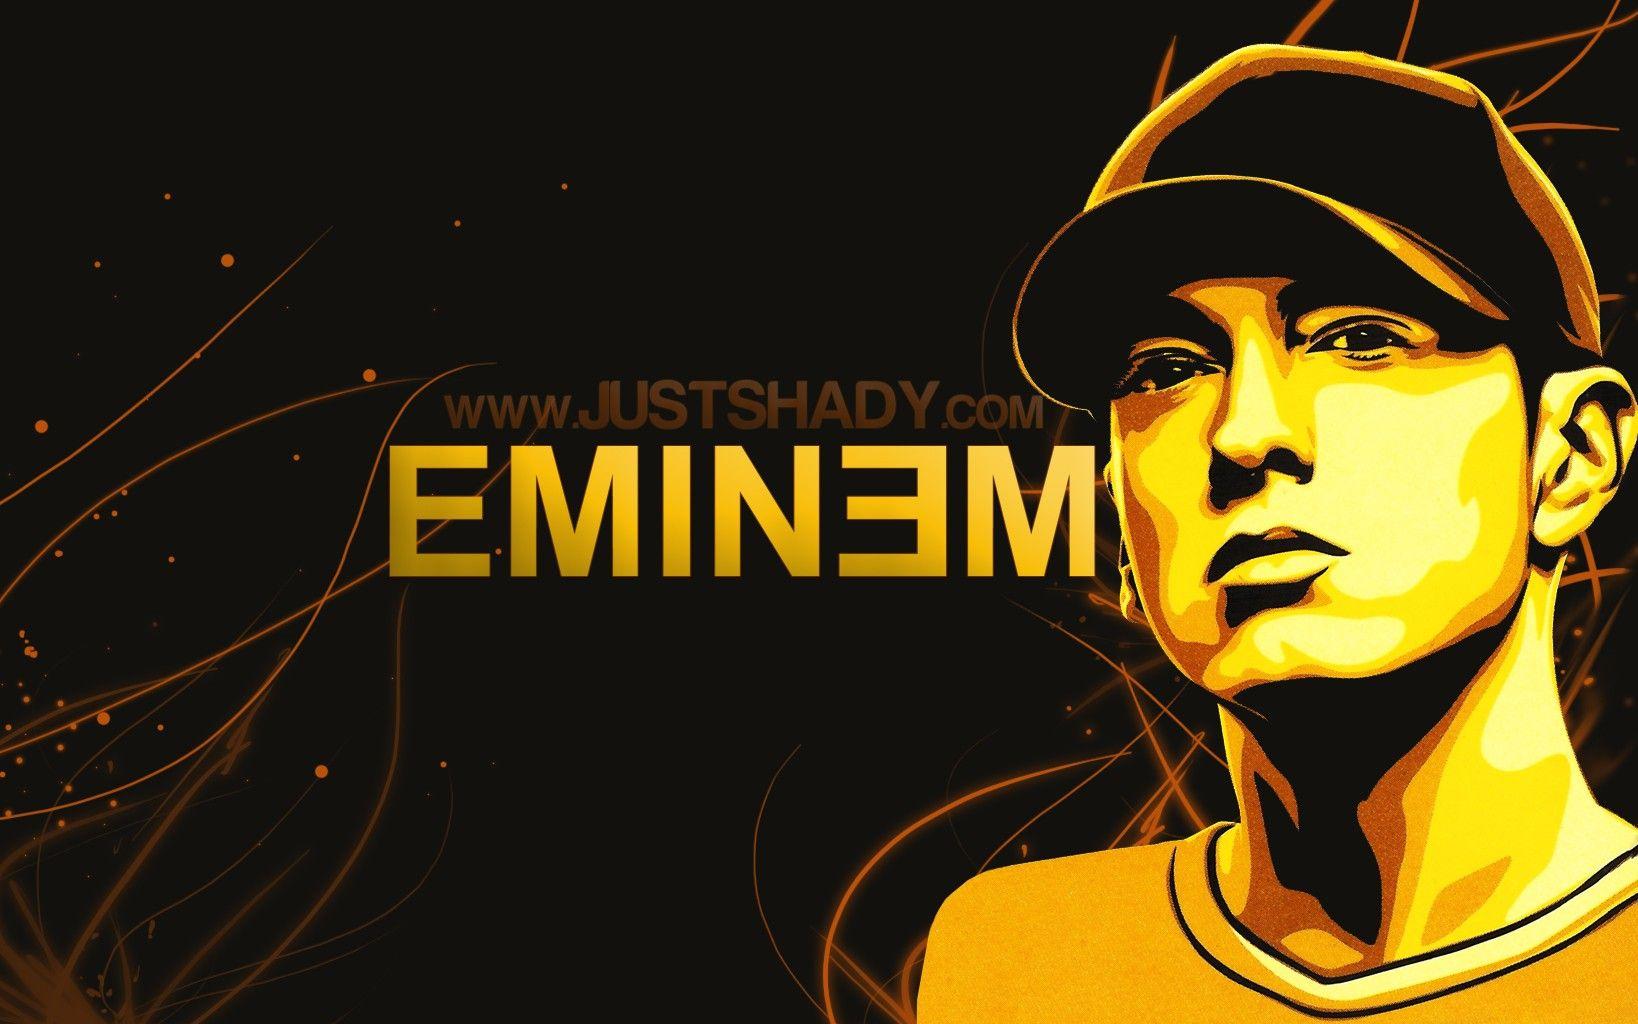 Eminem Logo Wallpapers Wallpaper Cave - Bank2home.com